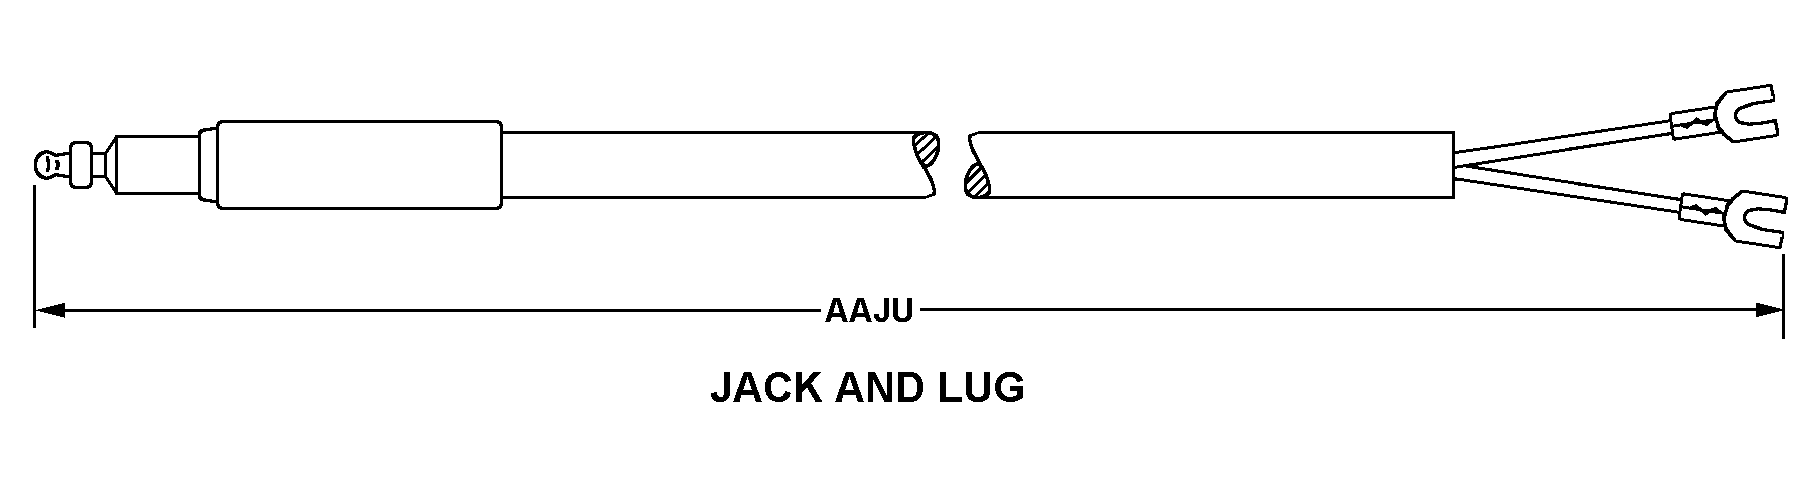 JACK AND LUG style nsn 6150-00-089-9503